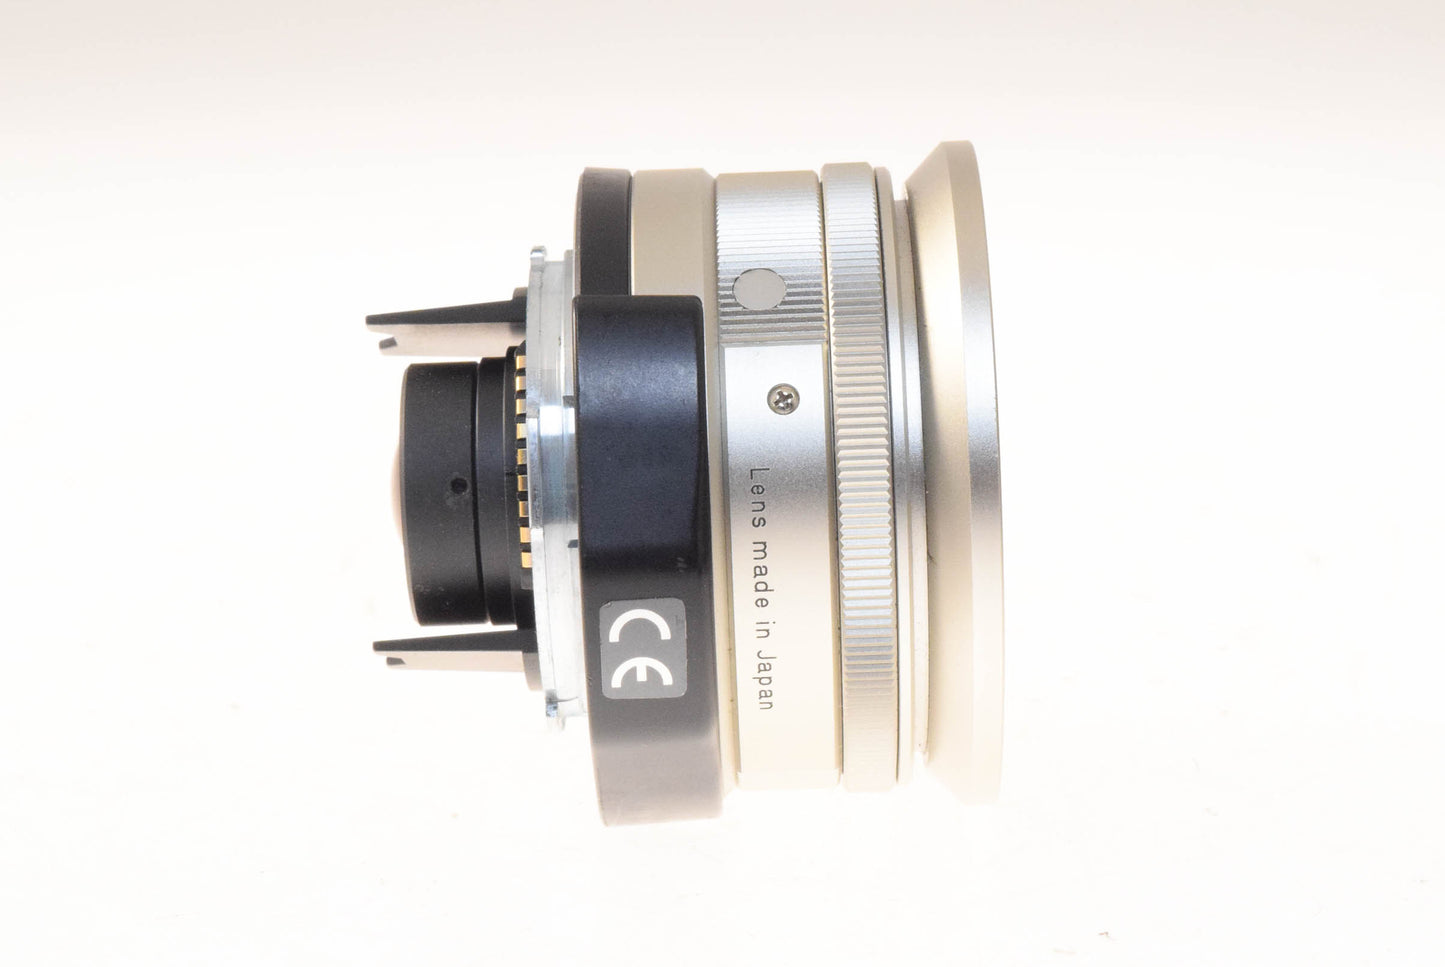 Carl Zeiss 21mm f2.8 Biogon T* + GF-21mm Optical Viewfinder